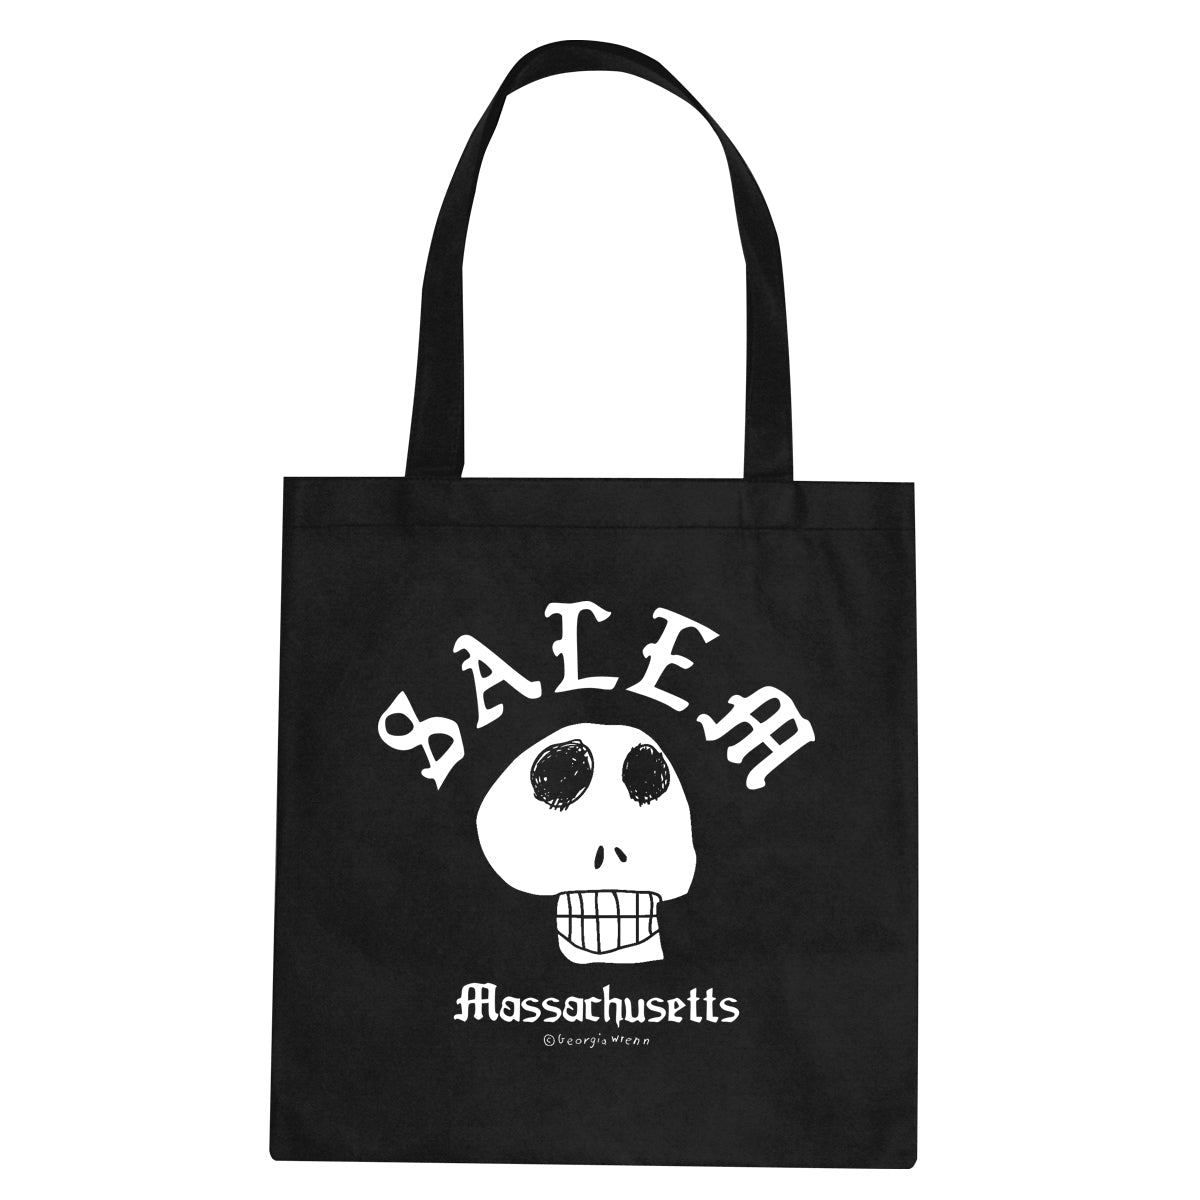 Salem "Skull" Tote Bag